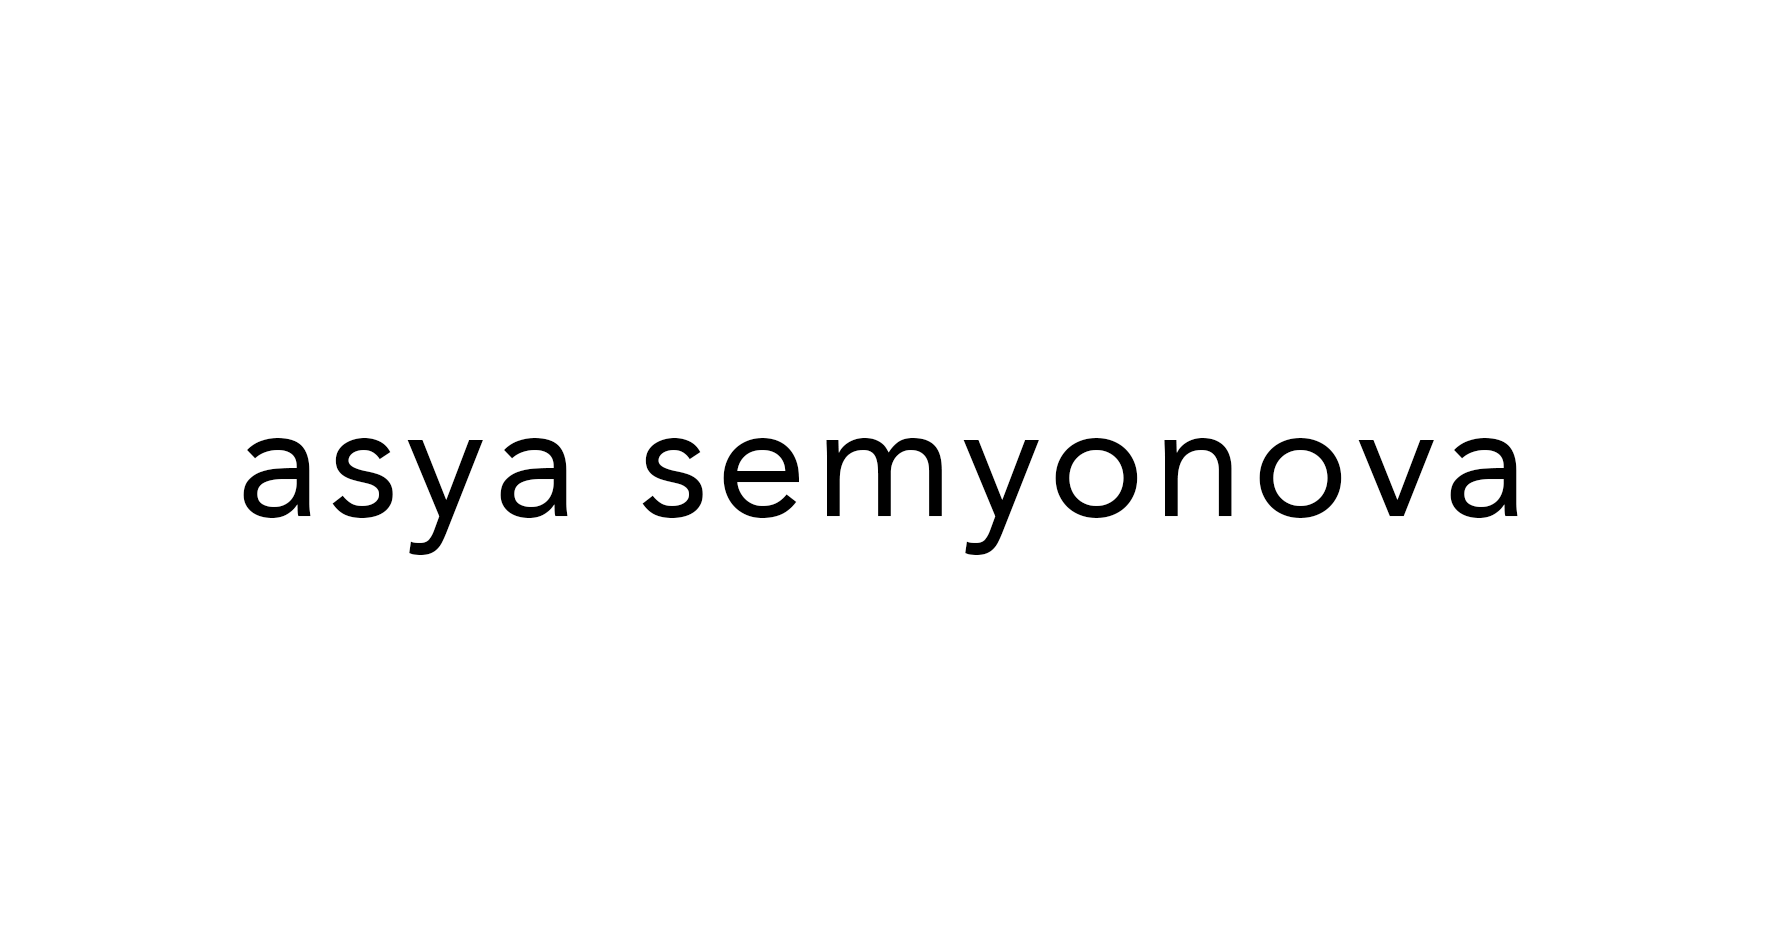 ASYA SEMYONOVA Одежда и аксессуары, купить онлайн, ASYA SEMYONOVA в универмаге Bolshoy